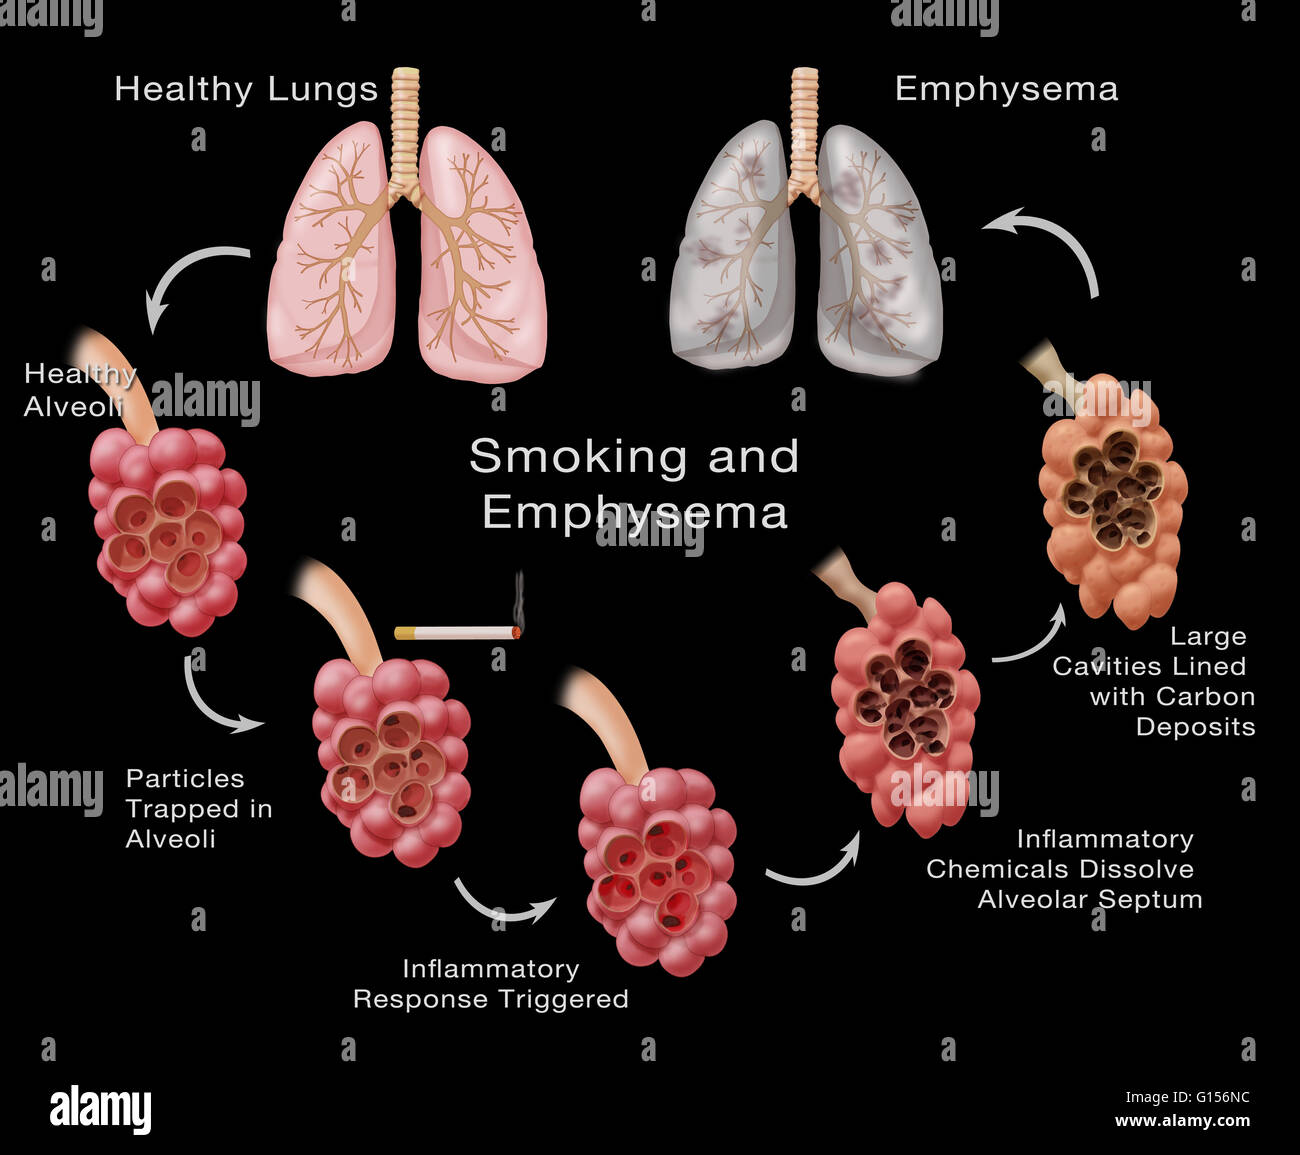 Fasi di danni ai polmoni di un fumatore che conduce all'enfisema.  L'illustrazione di cicli dalla parte superiore sinistra polmone sano verso  il basso e intorno alla parte superiore del polmone destro che